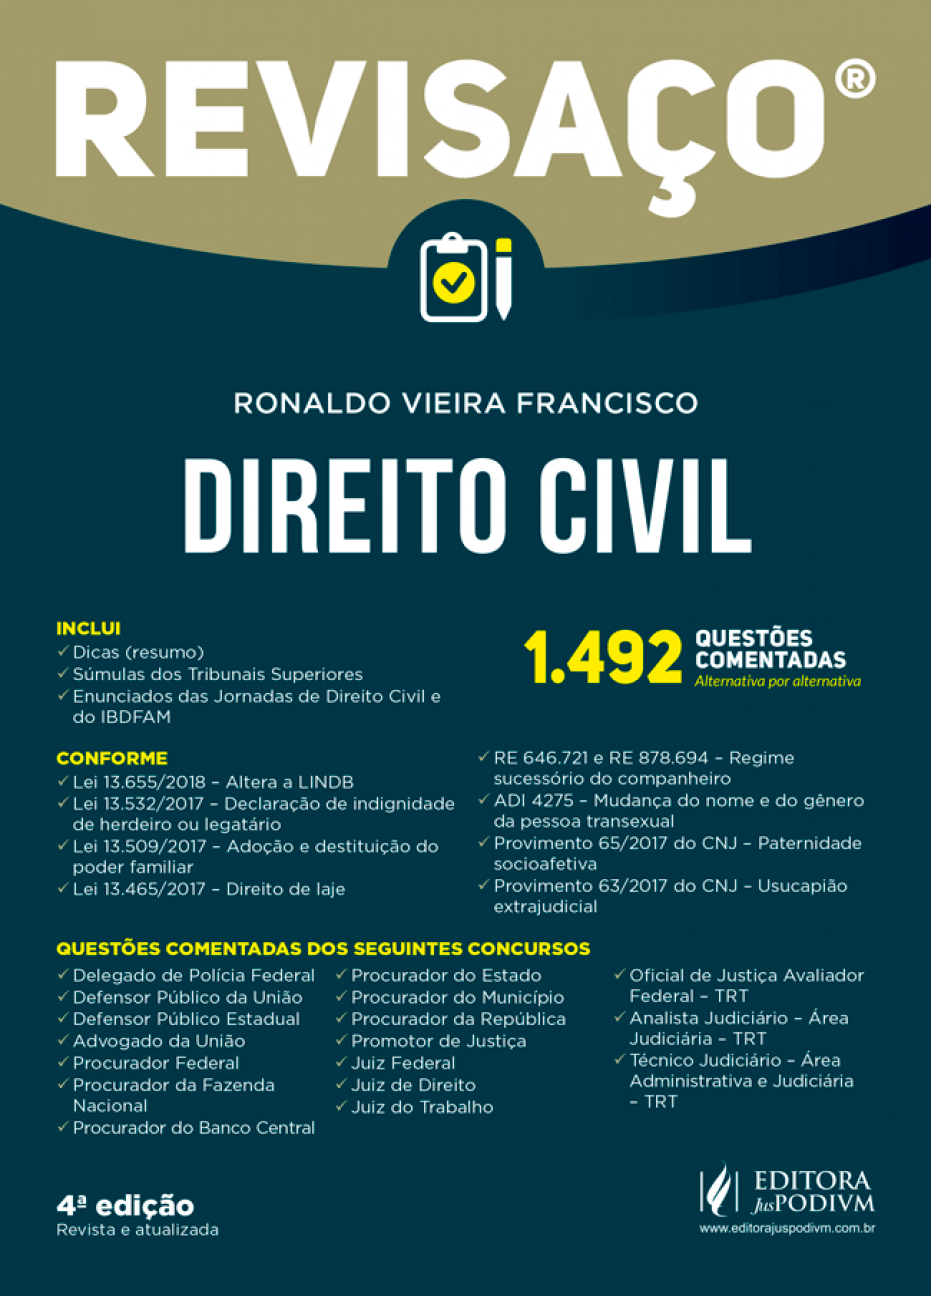 Revisaço - Direito Civil - 04Ed/18